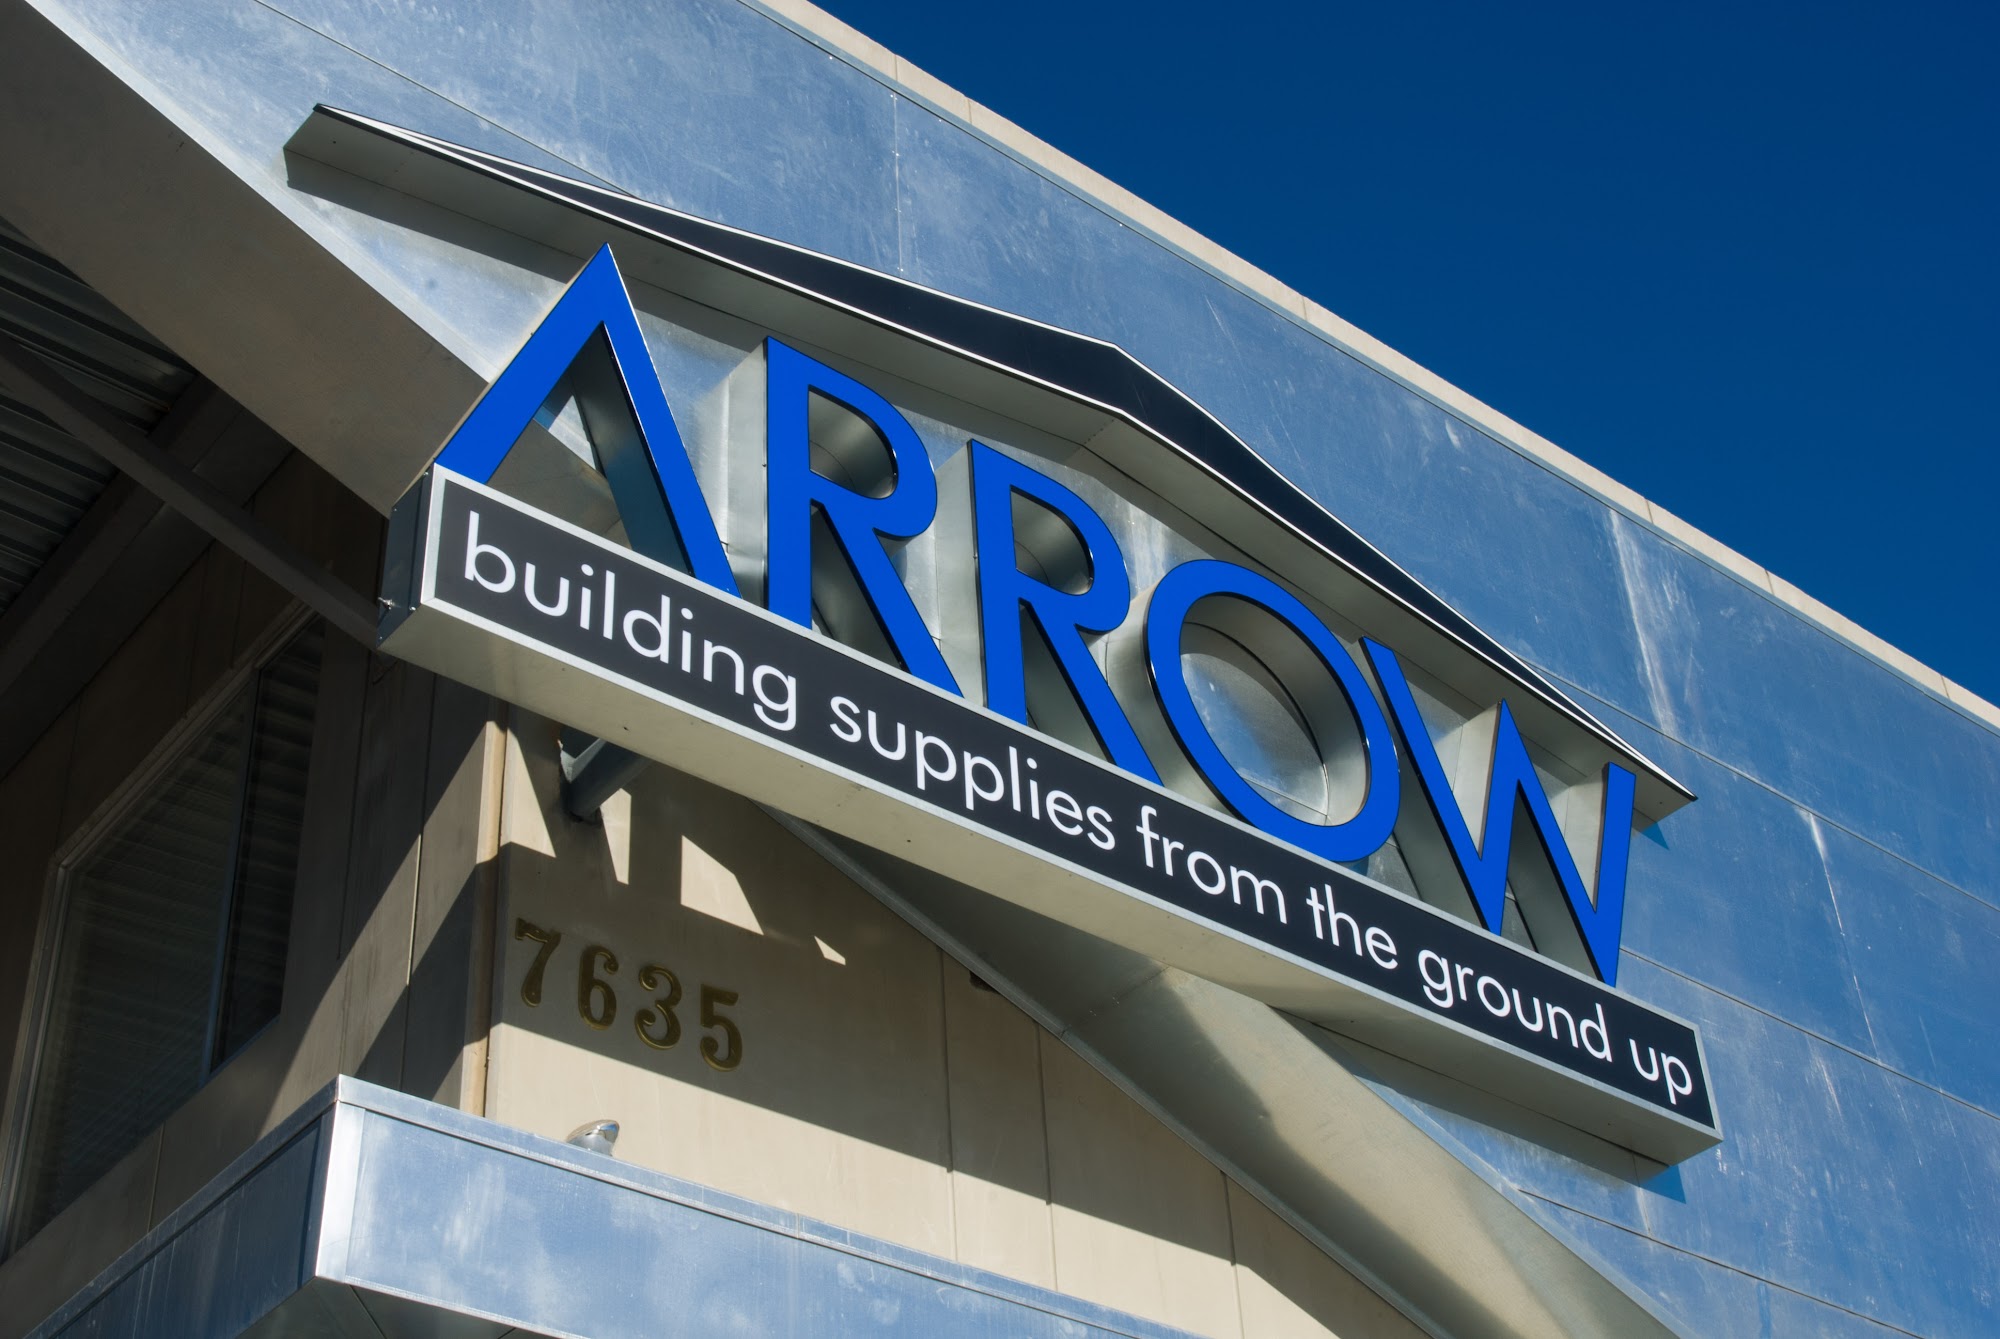 Arrow Building Supplies